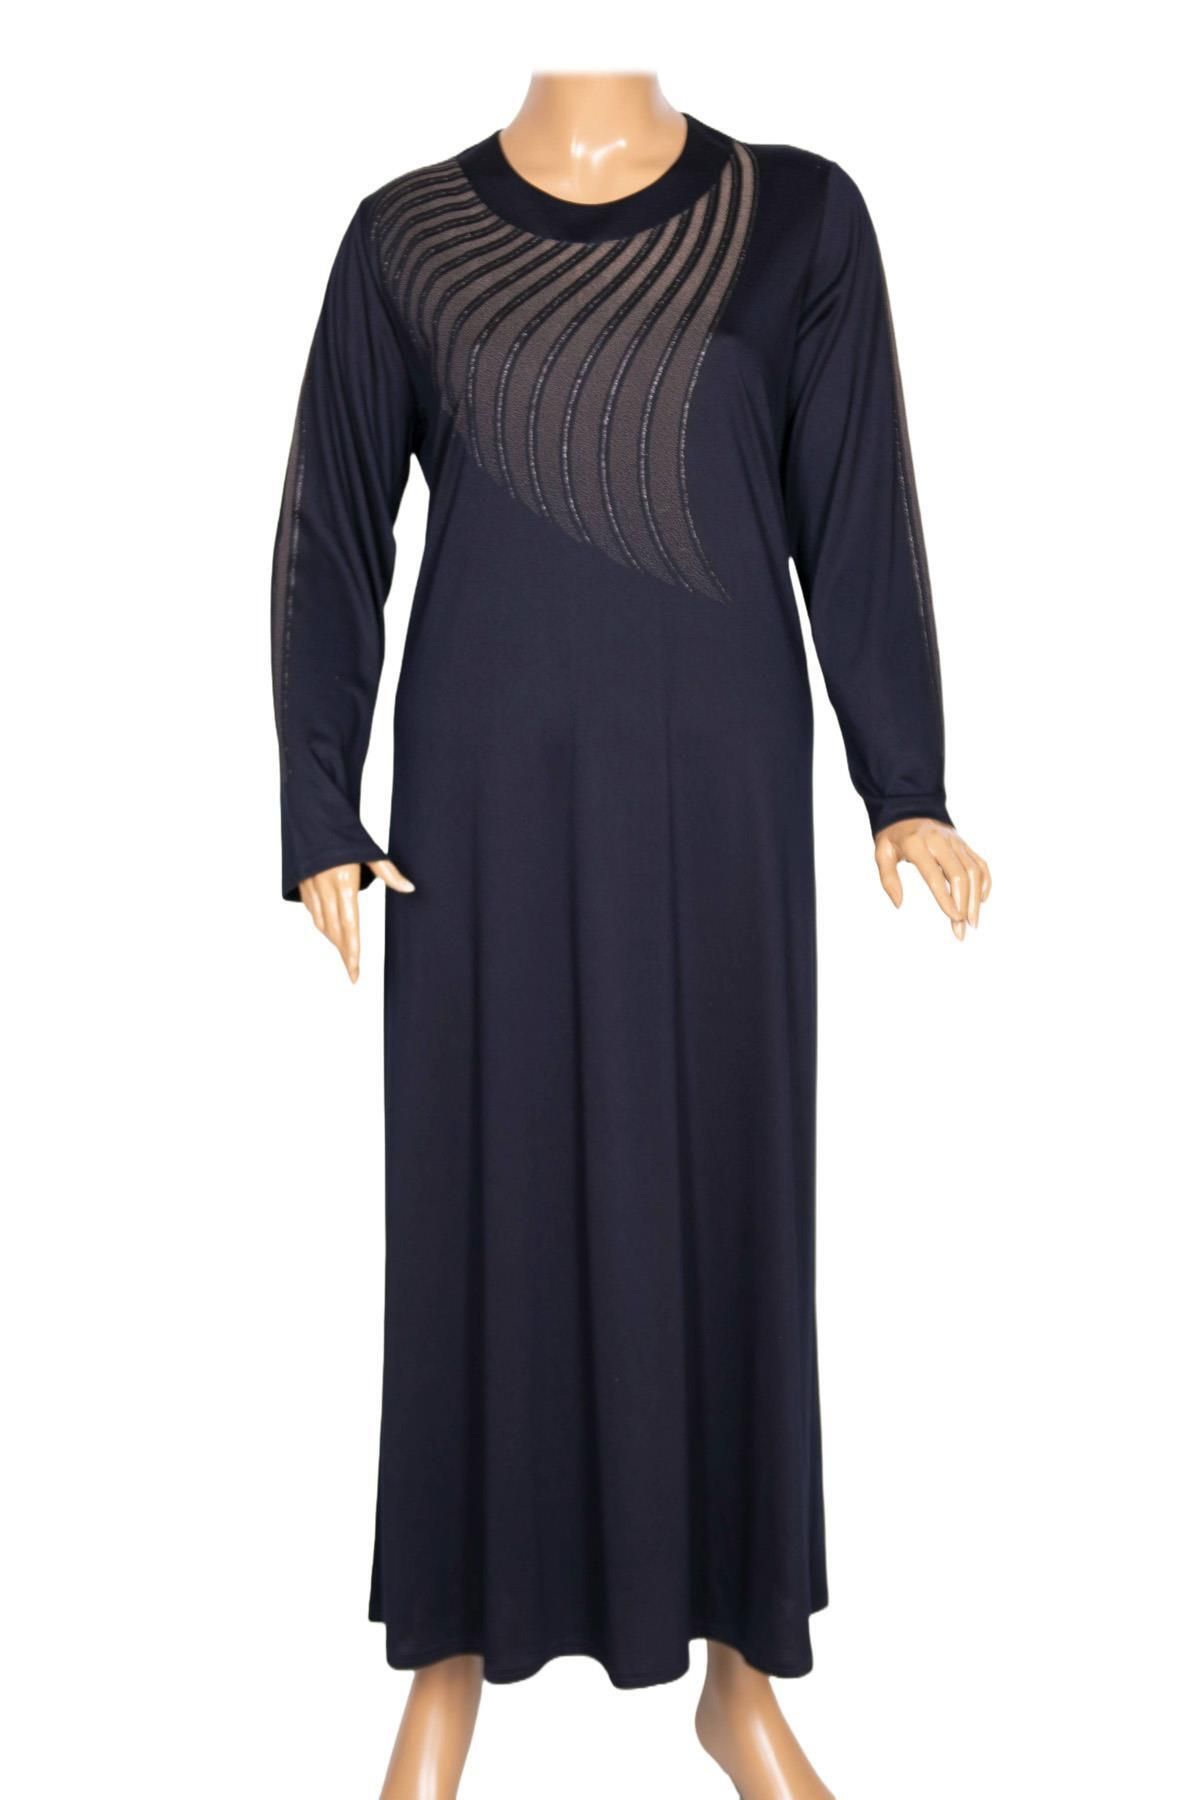 HESNA Kadın Belde Büyük Beden Boydan Baskılı Lacivert Elbise